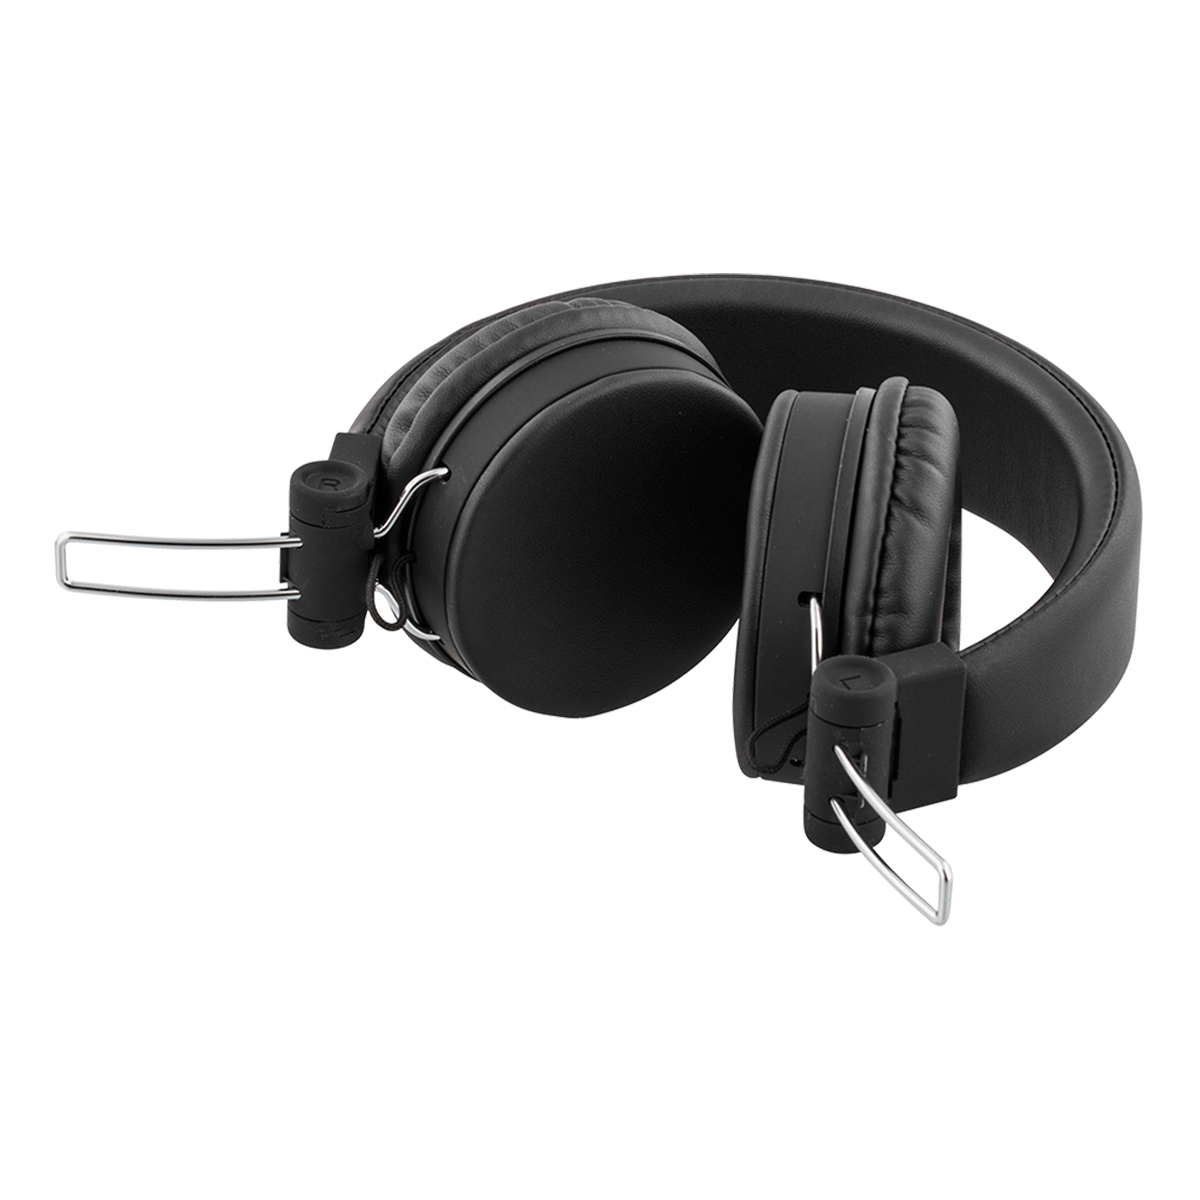 STREETZ vikbara hörlurar med mikrofon, 3.5mm, 1.5m, svart